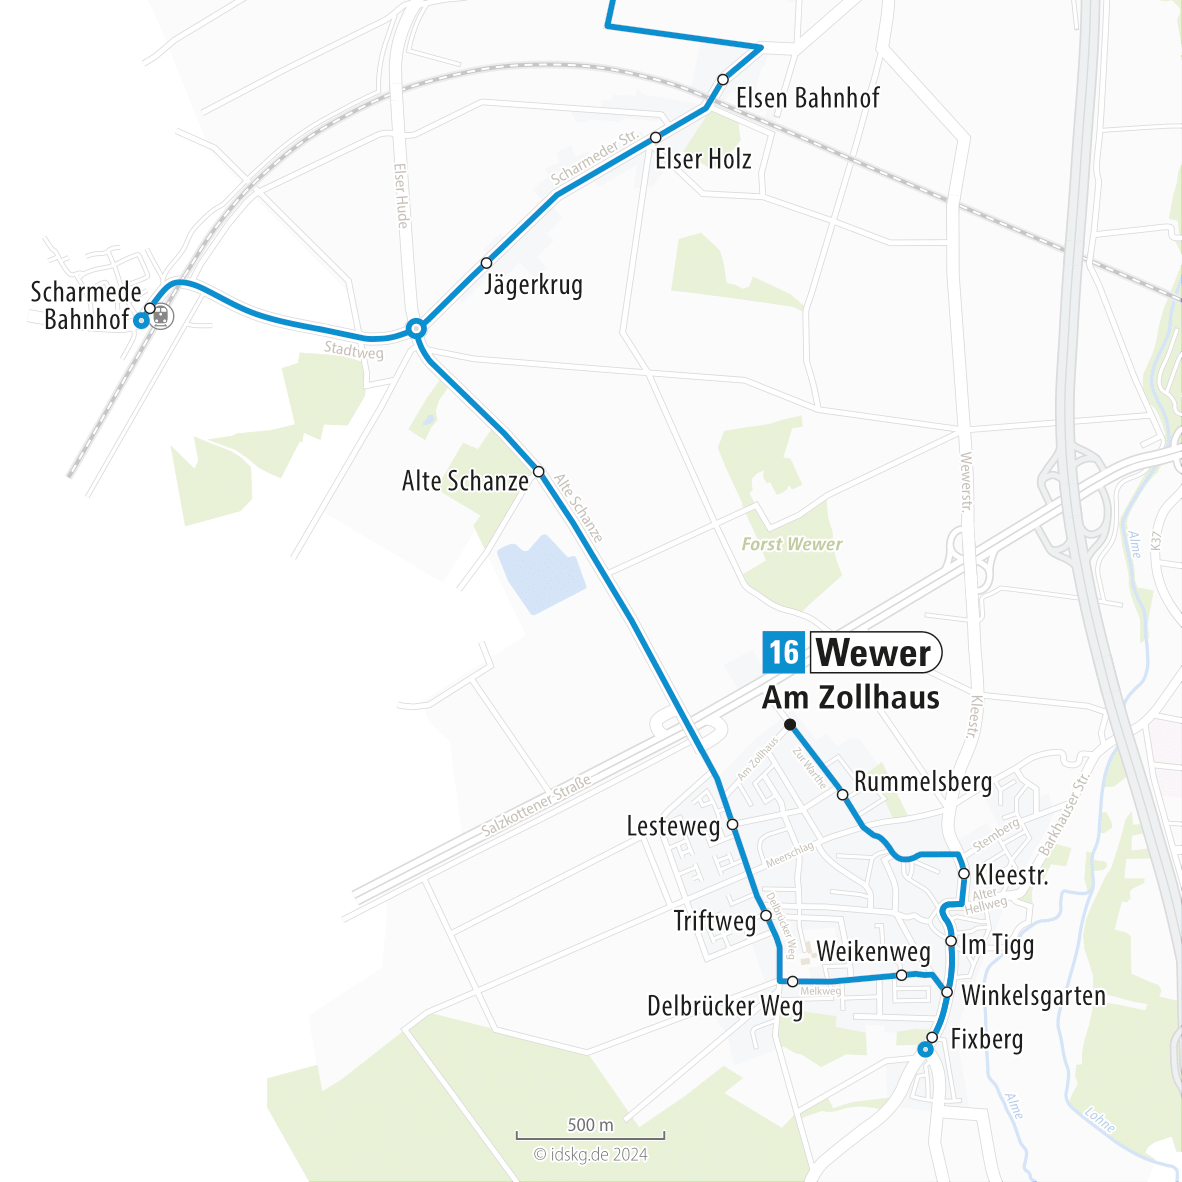 Kartenausschnitt der Linie 16 Wewer bis Scharmede 15x15